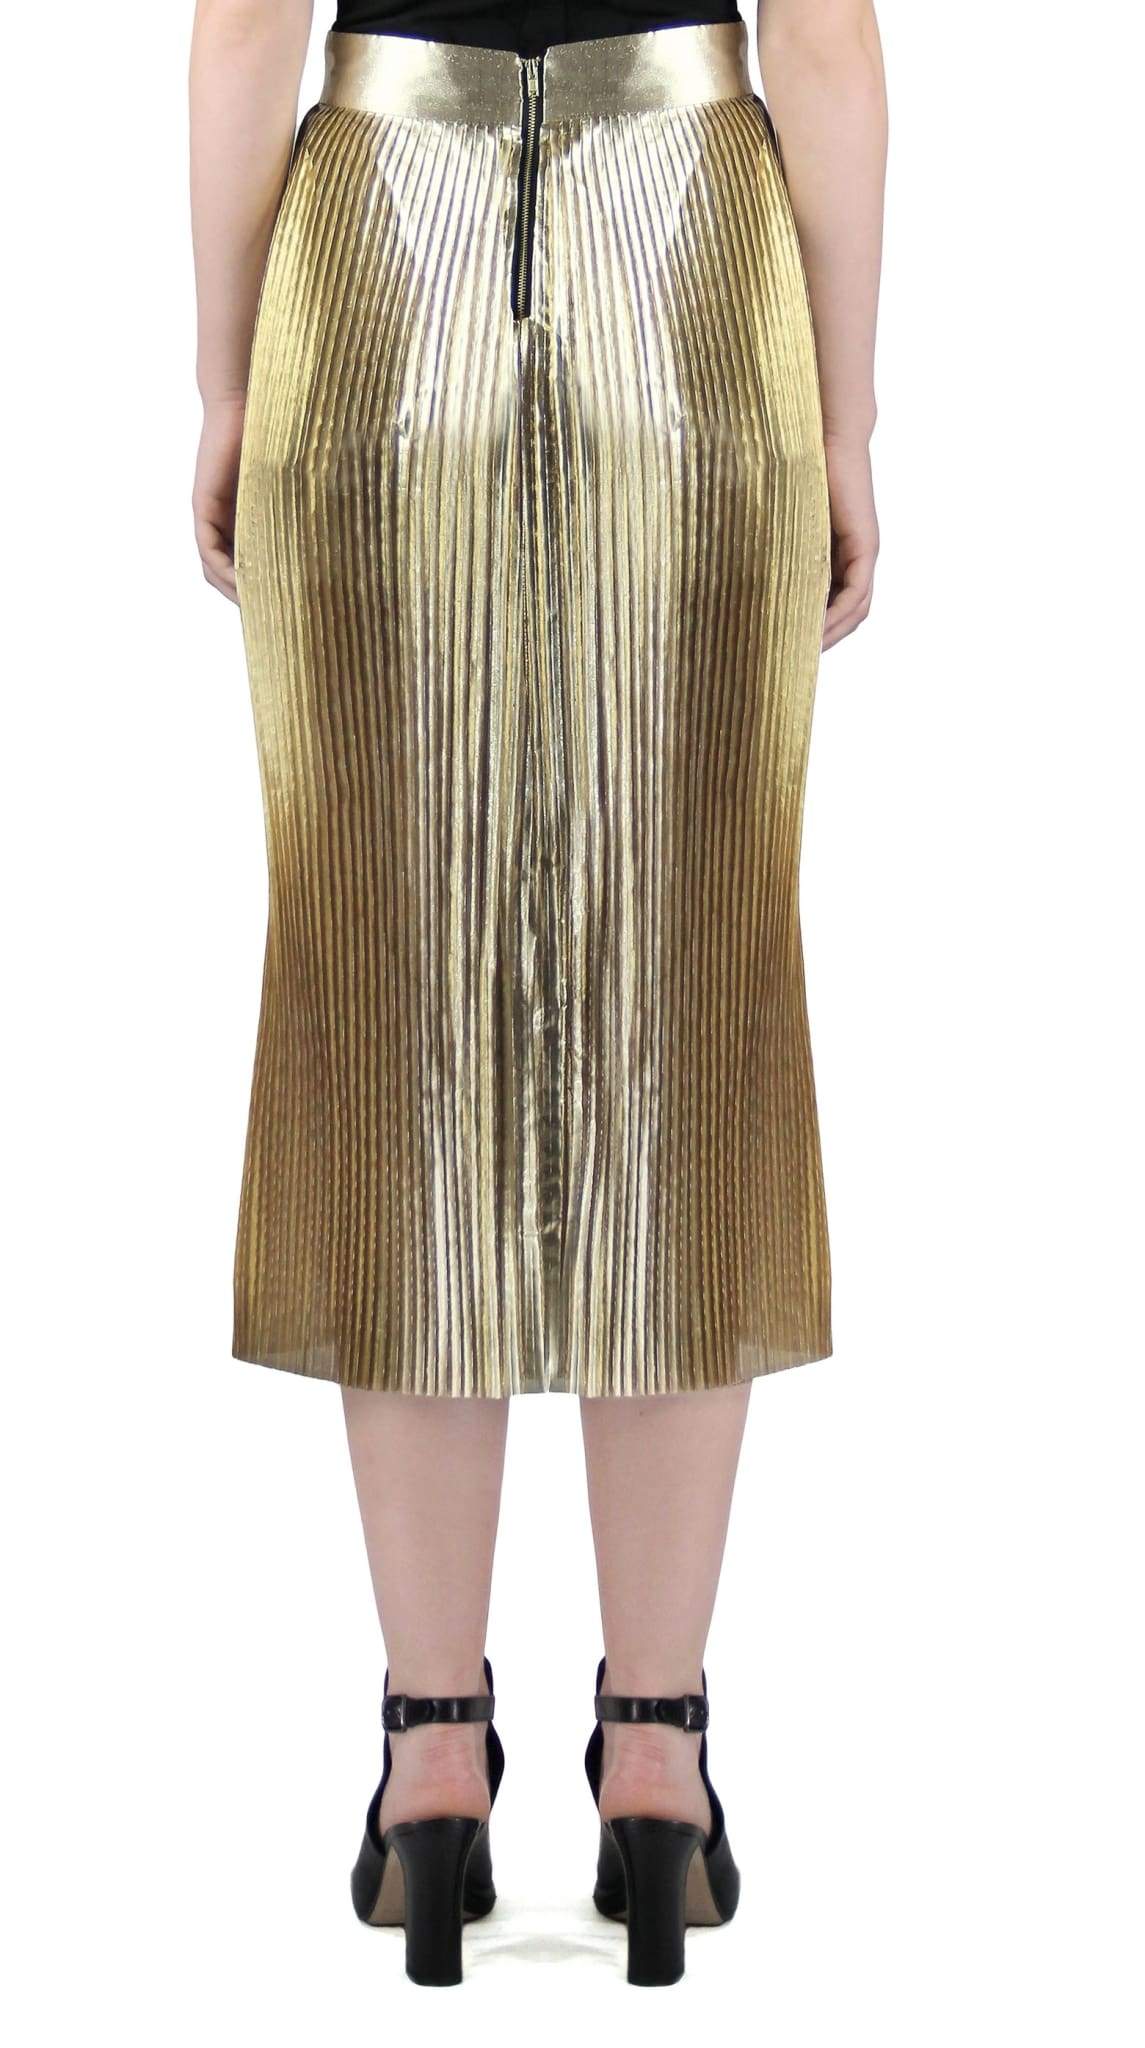 gold skirt material